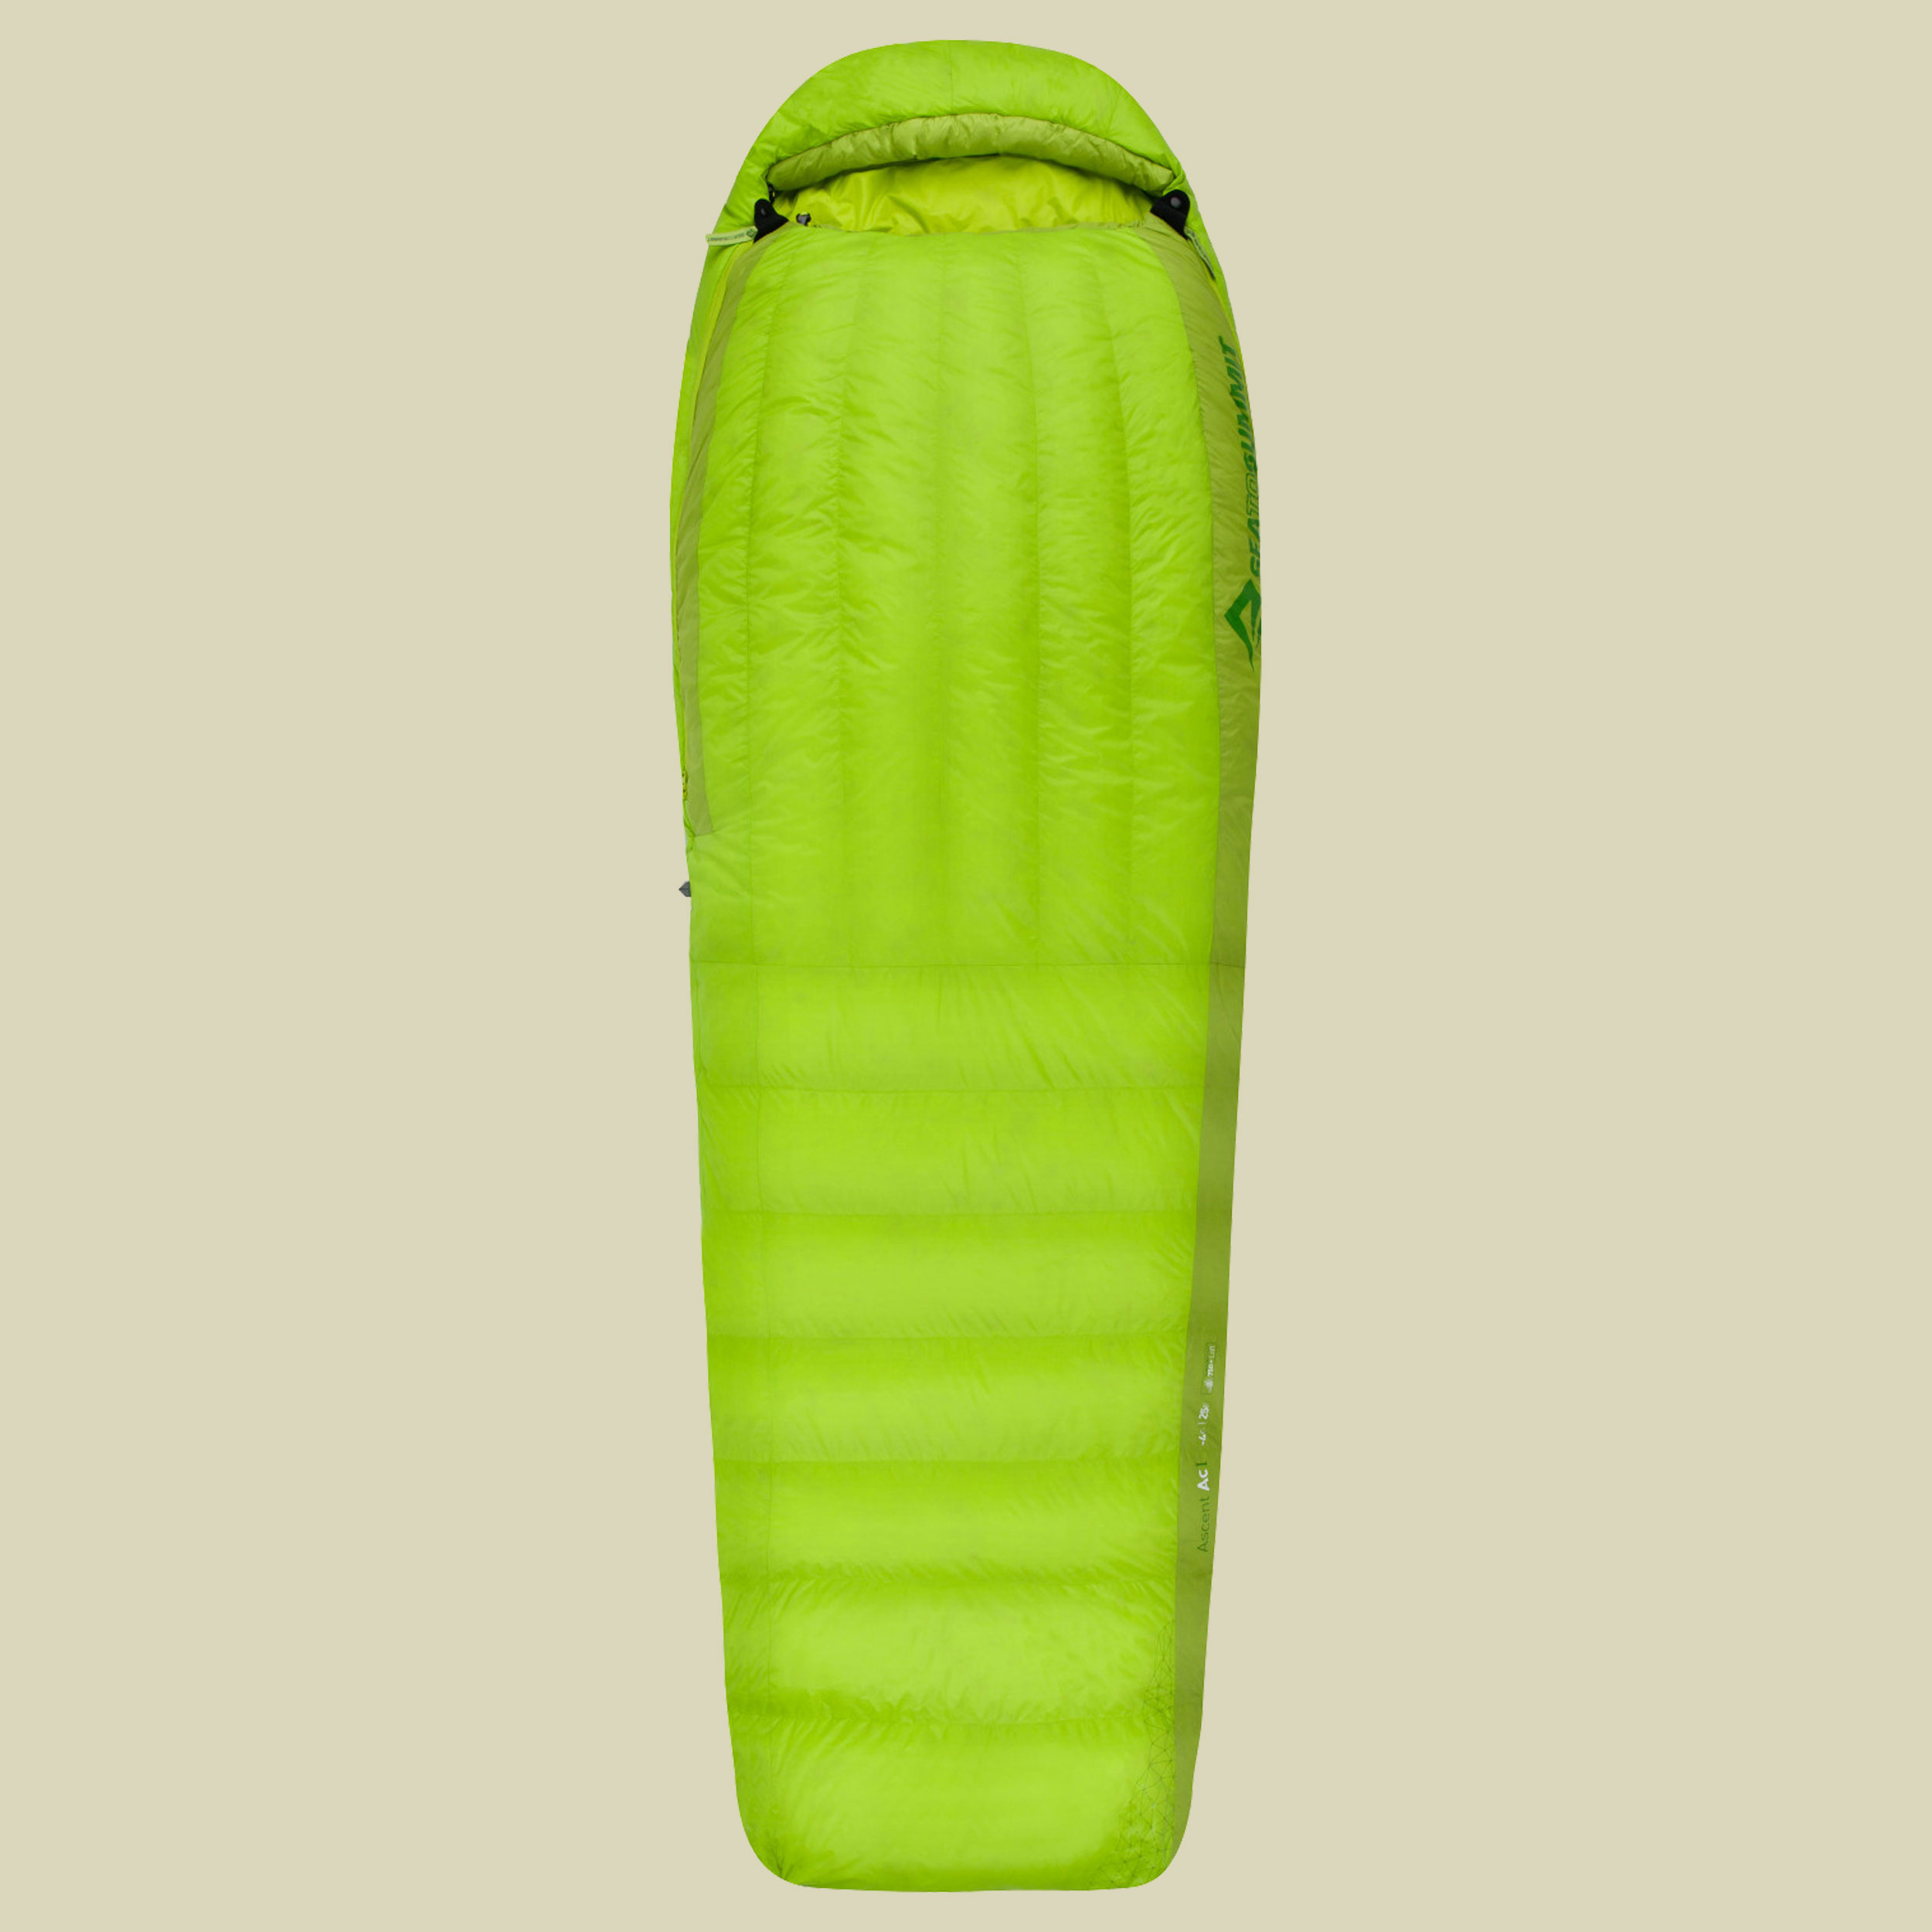 Ascent AcI bis Körpergröße 183 cm Farbe lime/moss, Reißverschluss links